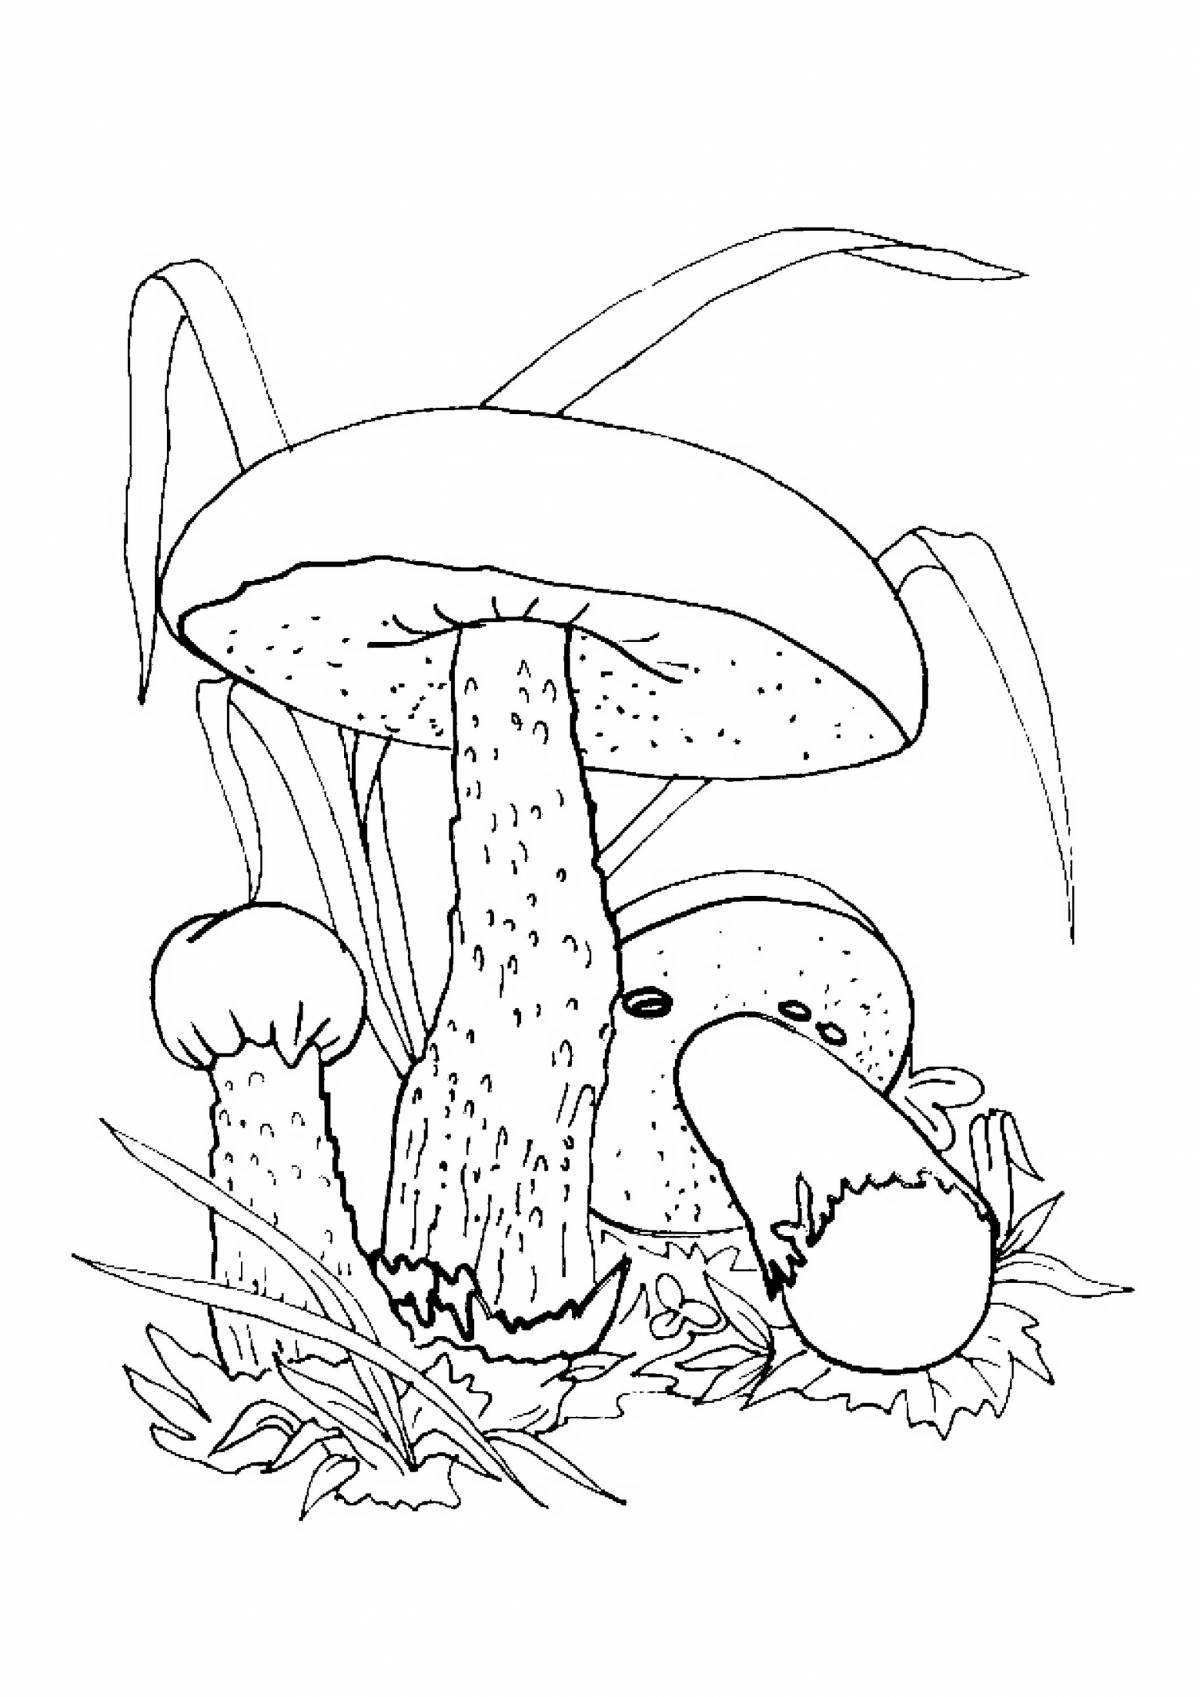 Shine mushroom drawing